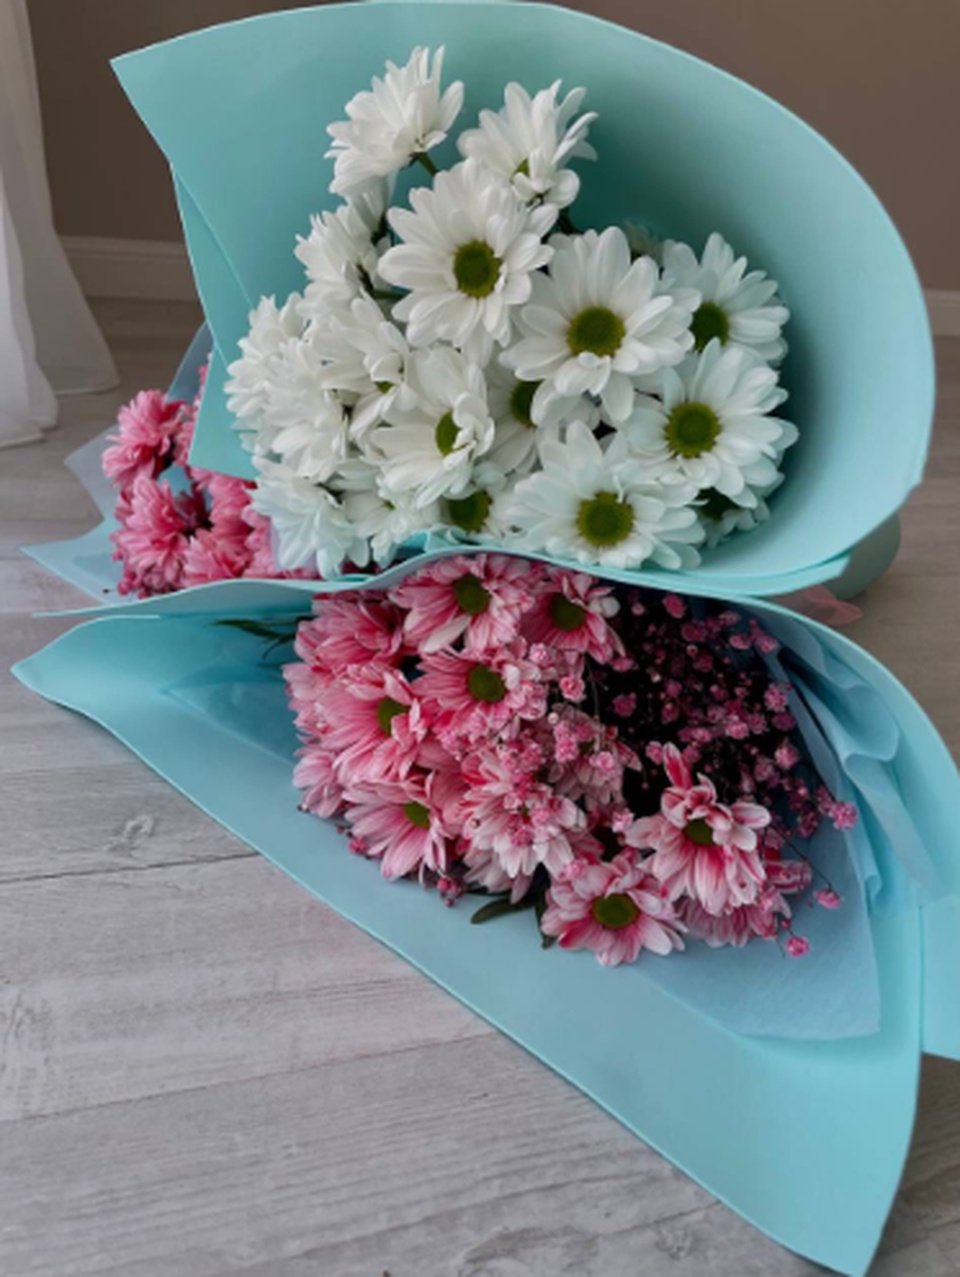 Букет цветов - 1 500 ₽, заказать онлайн.